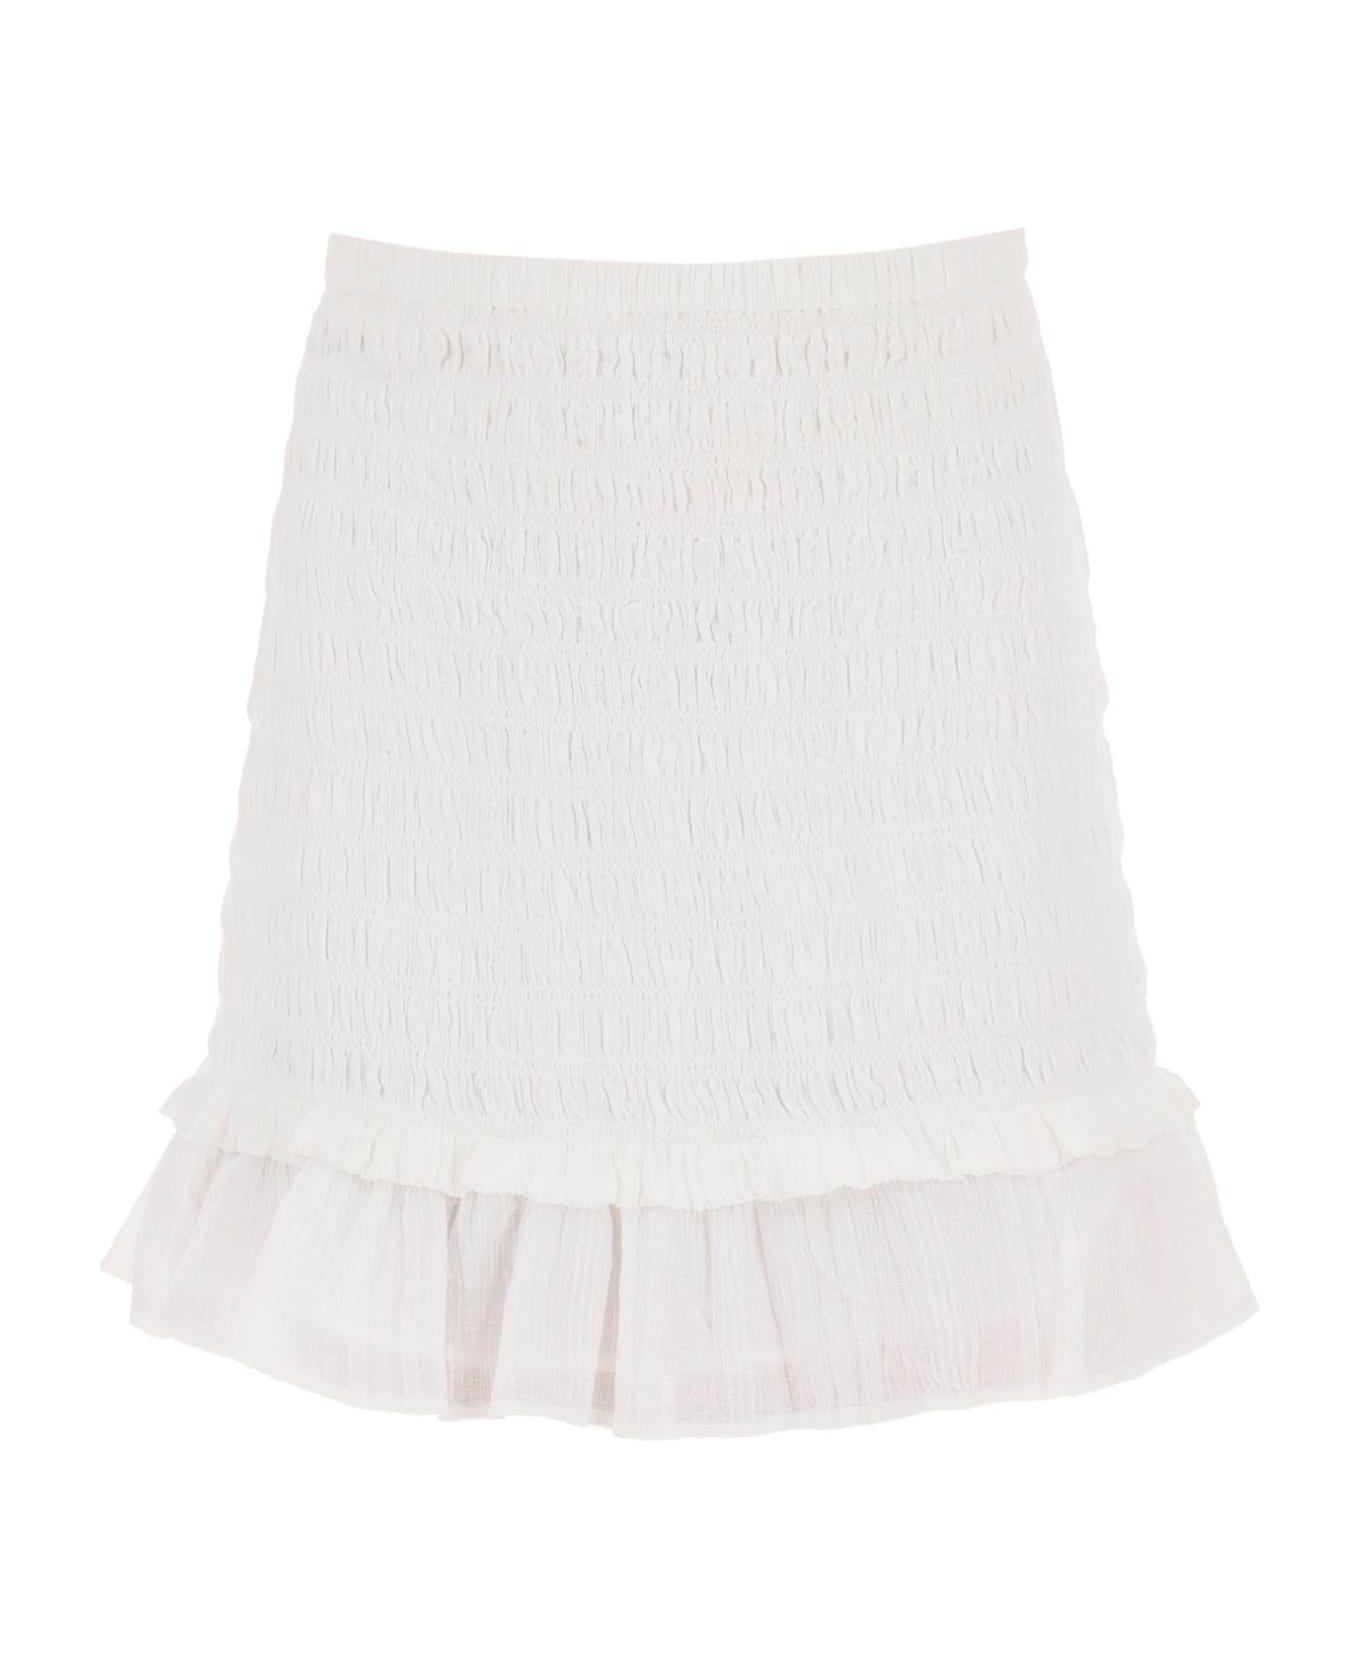 Marant Étoile Dorela Mini Skirt - WHITE